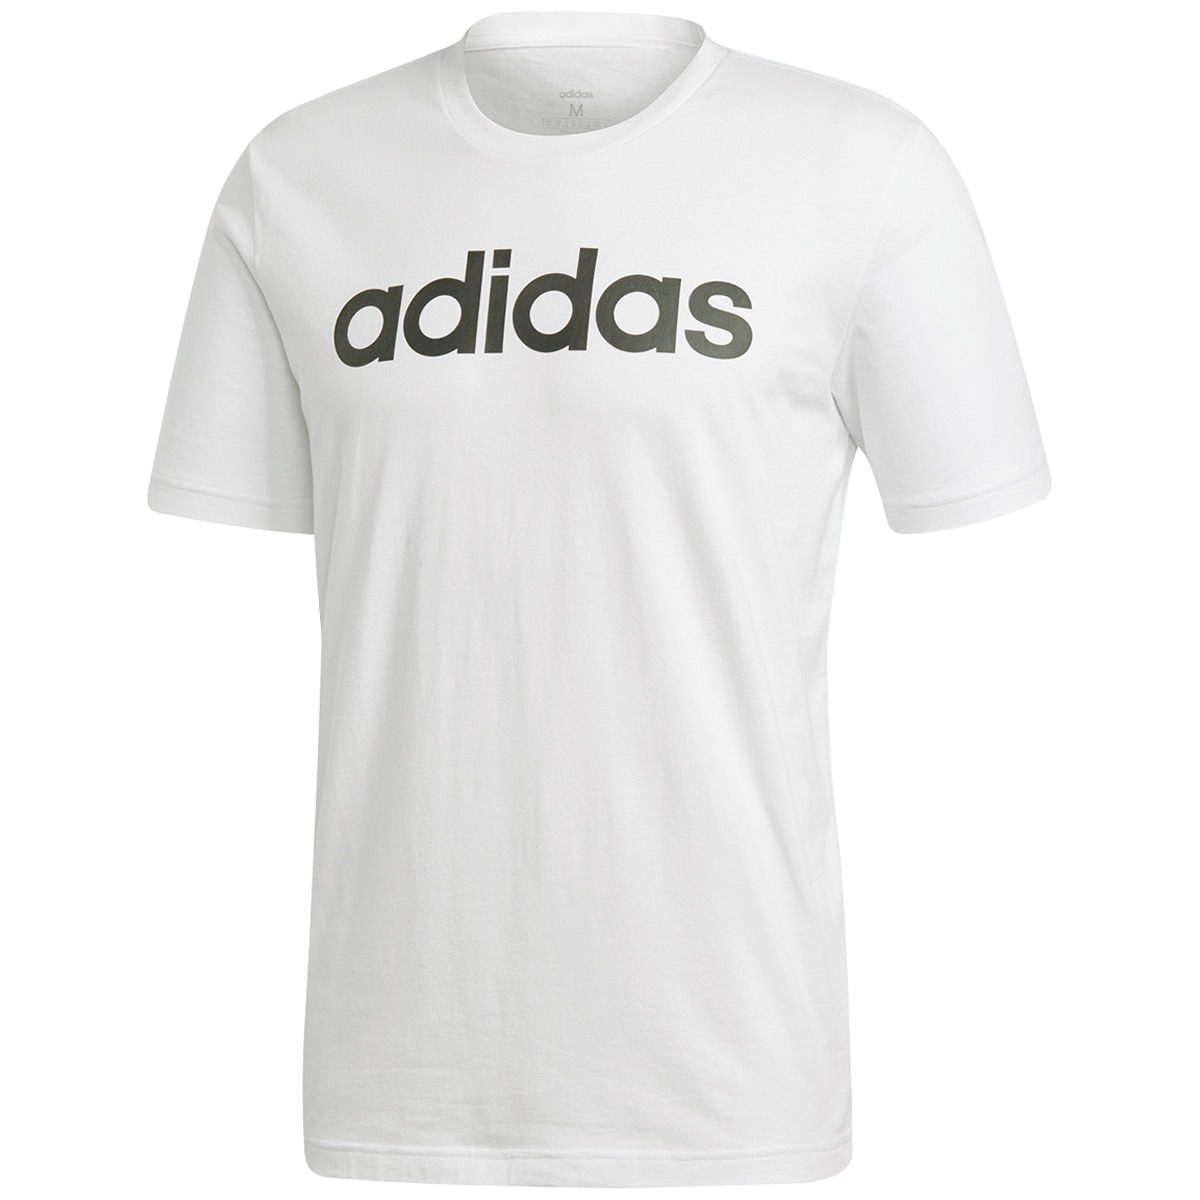 Adidas Tee Active - White Logo